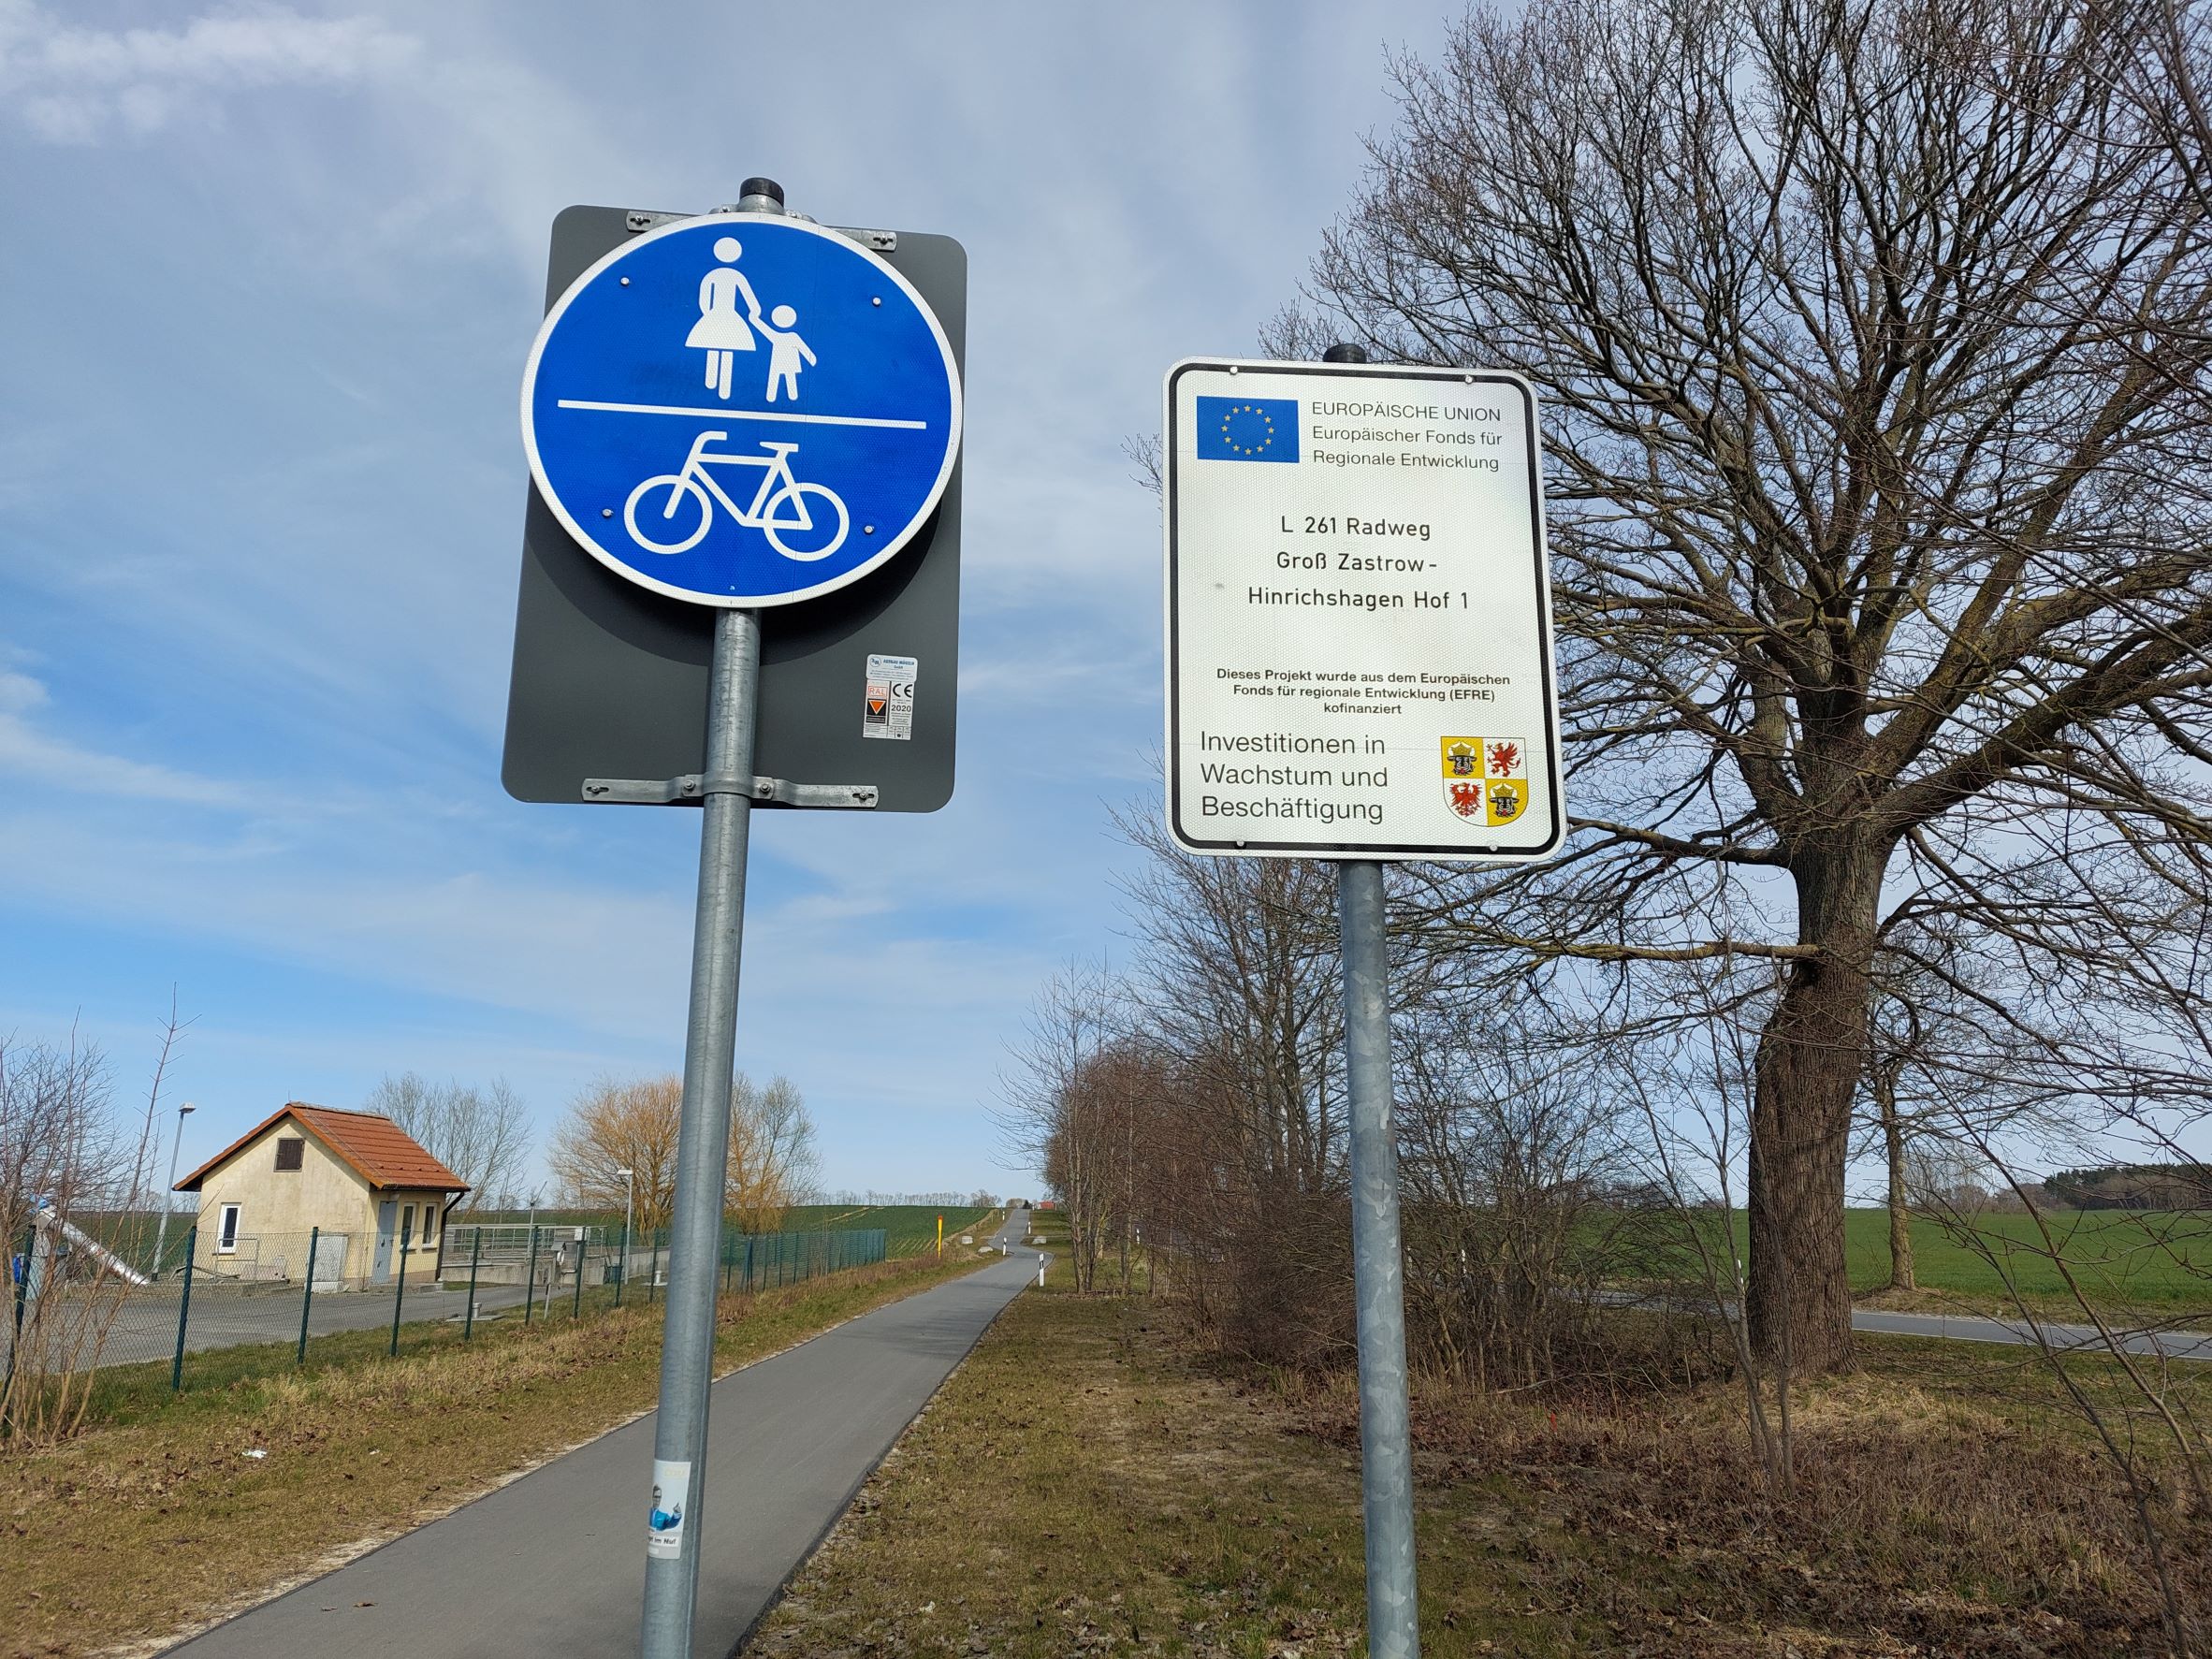 Radweg zwischen Groß Zastrow und Hinrichshagen Hof 1